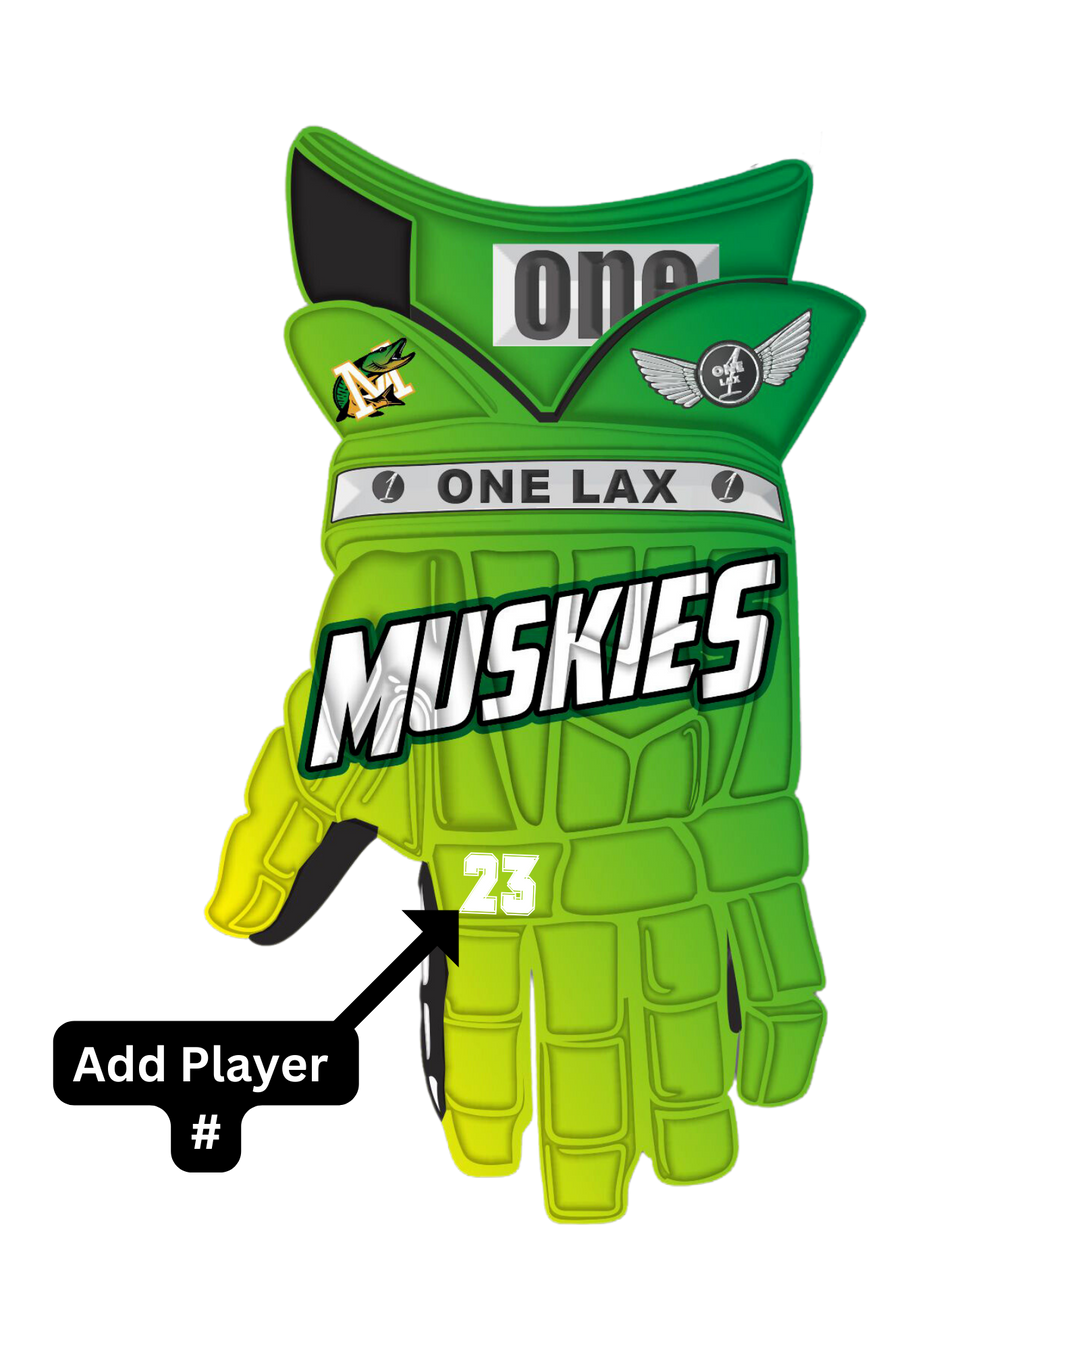 Milwaukee Muskies Team | HYBRID Box & Field Lacrosse Gloves - One Lax